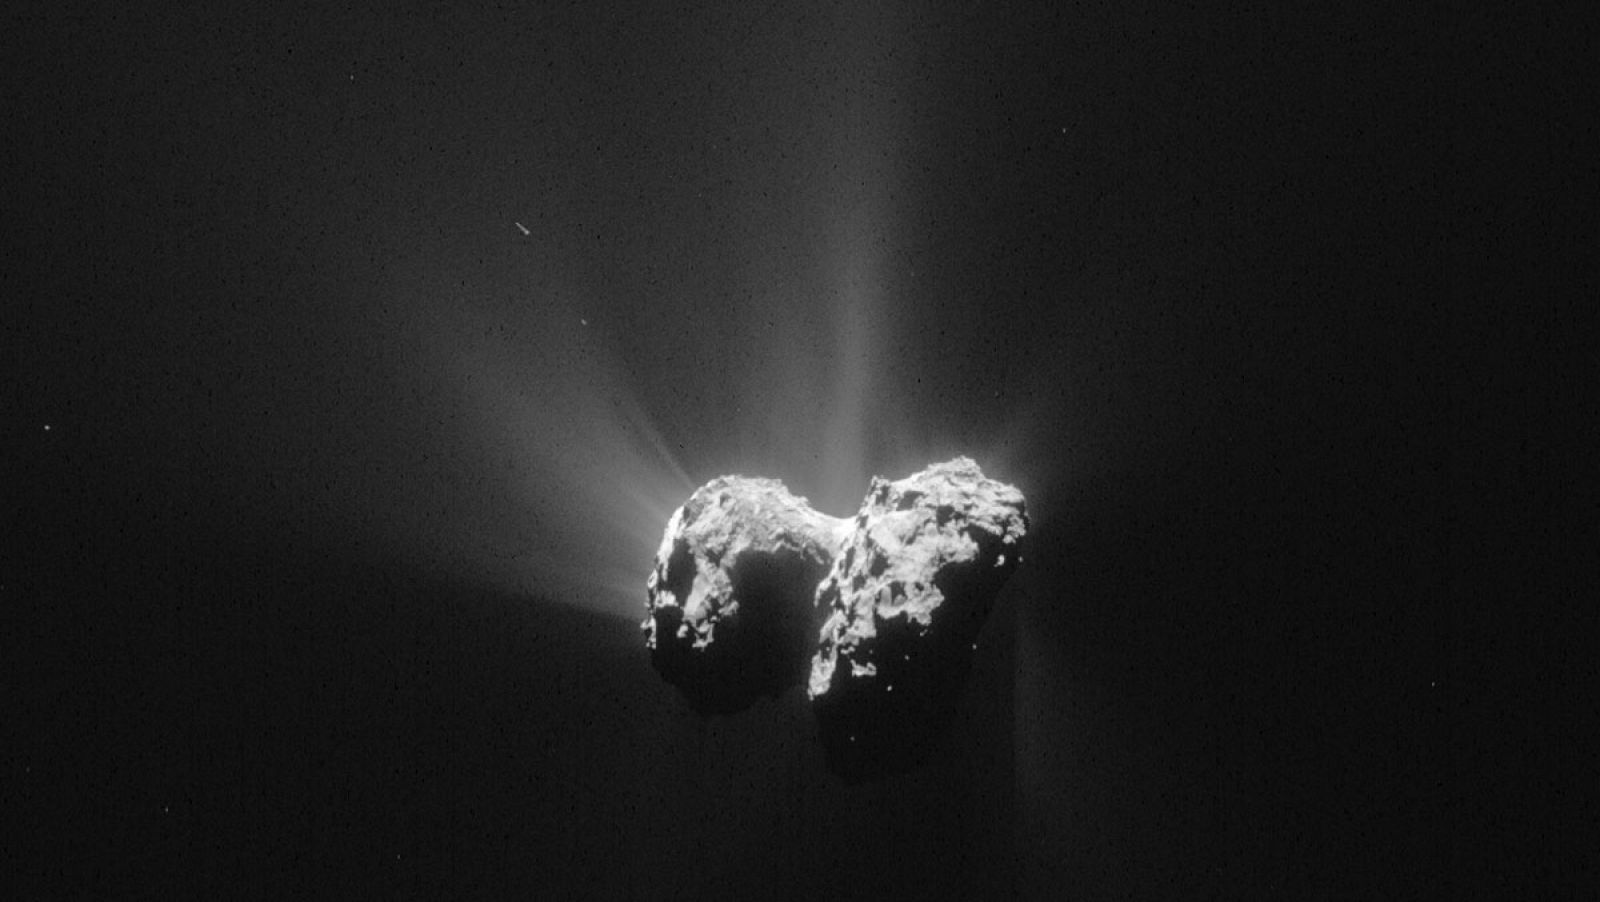 Una imagen del cometa 67P/Churyumov-Gerasimenko tomada desde la sonda Rosetta, a 207 km del centro del cometa, el 15 de junio de 2015.